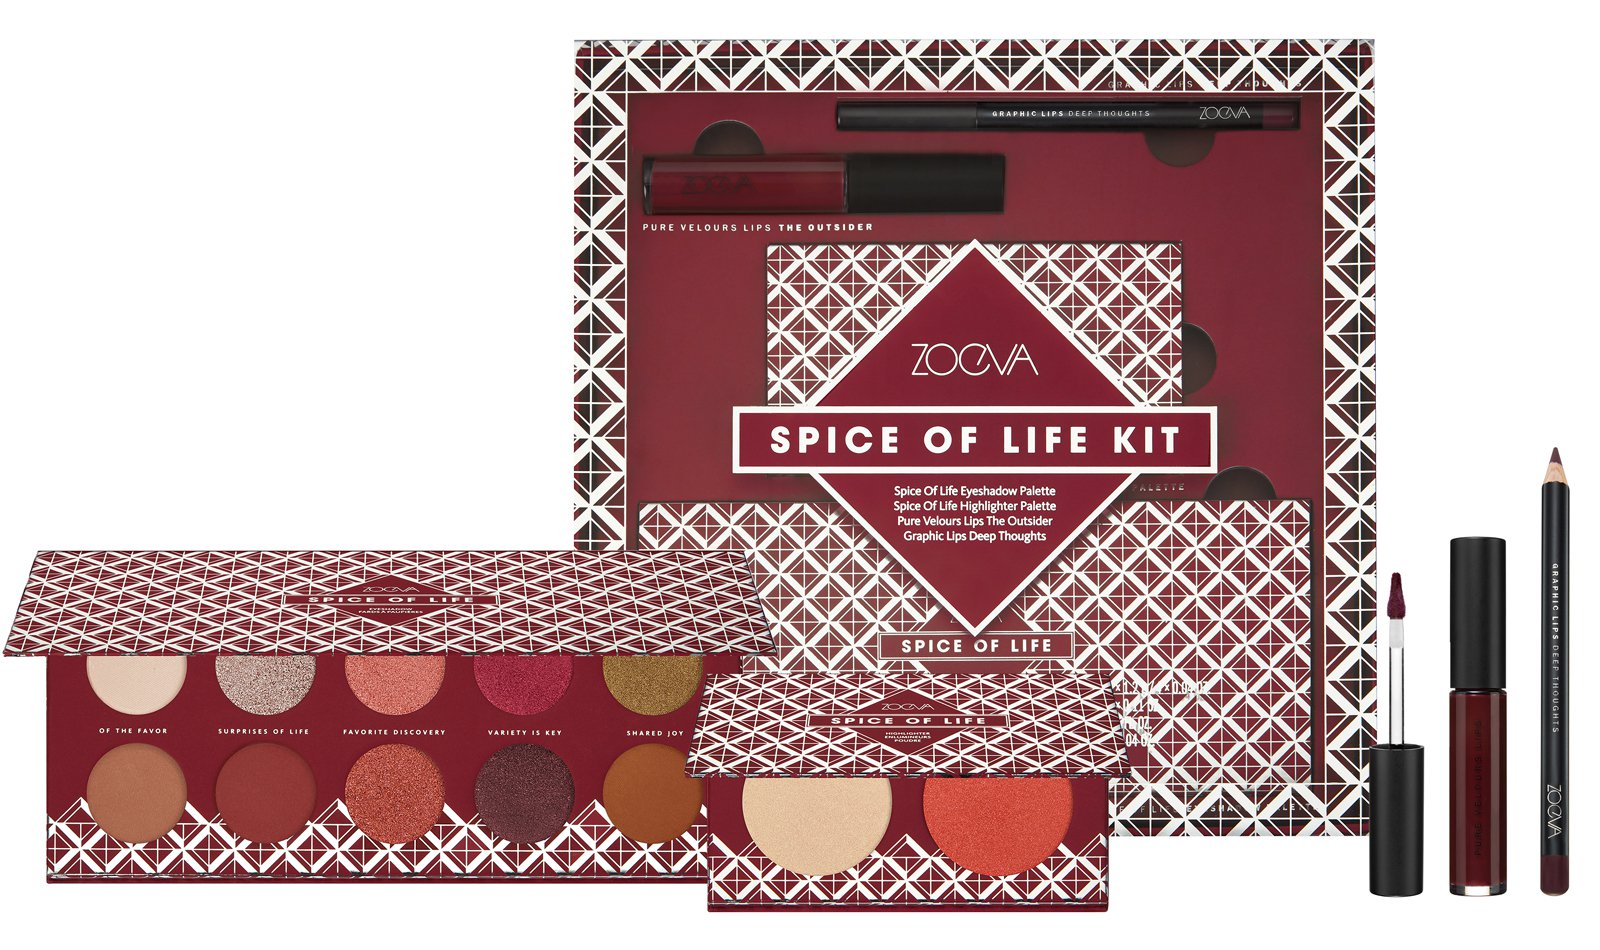 Zoeva Spice of Life Kit